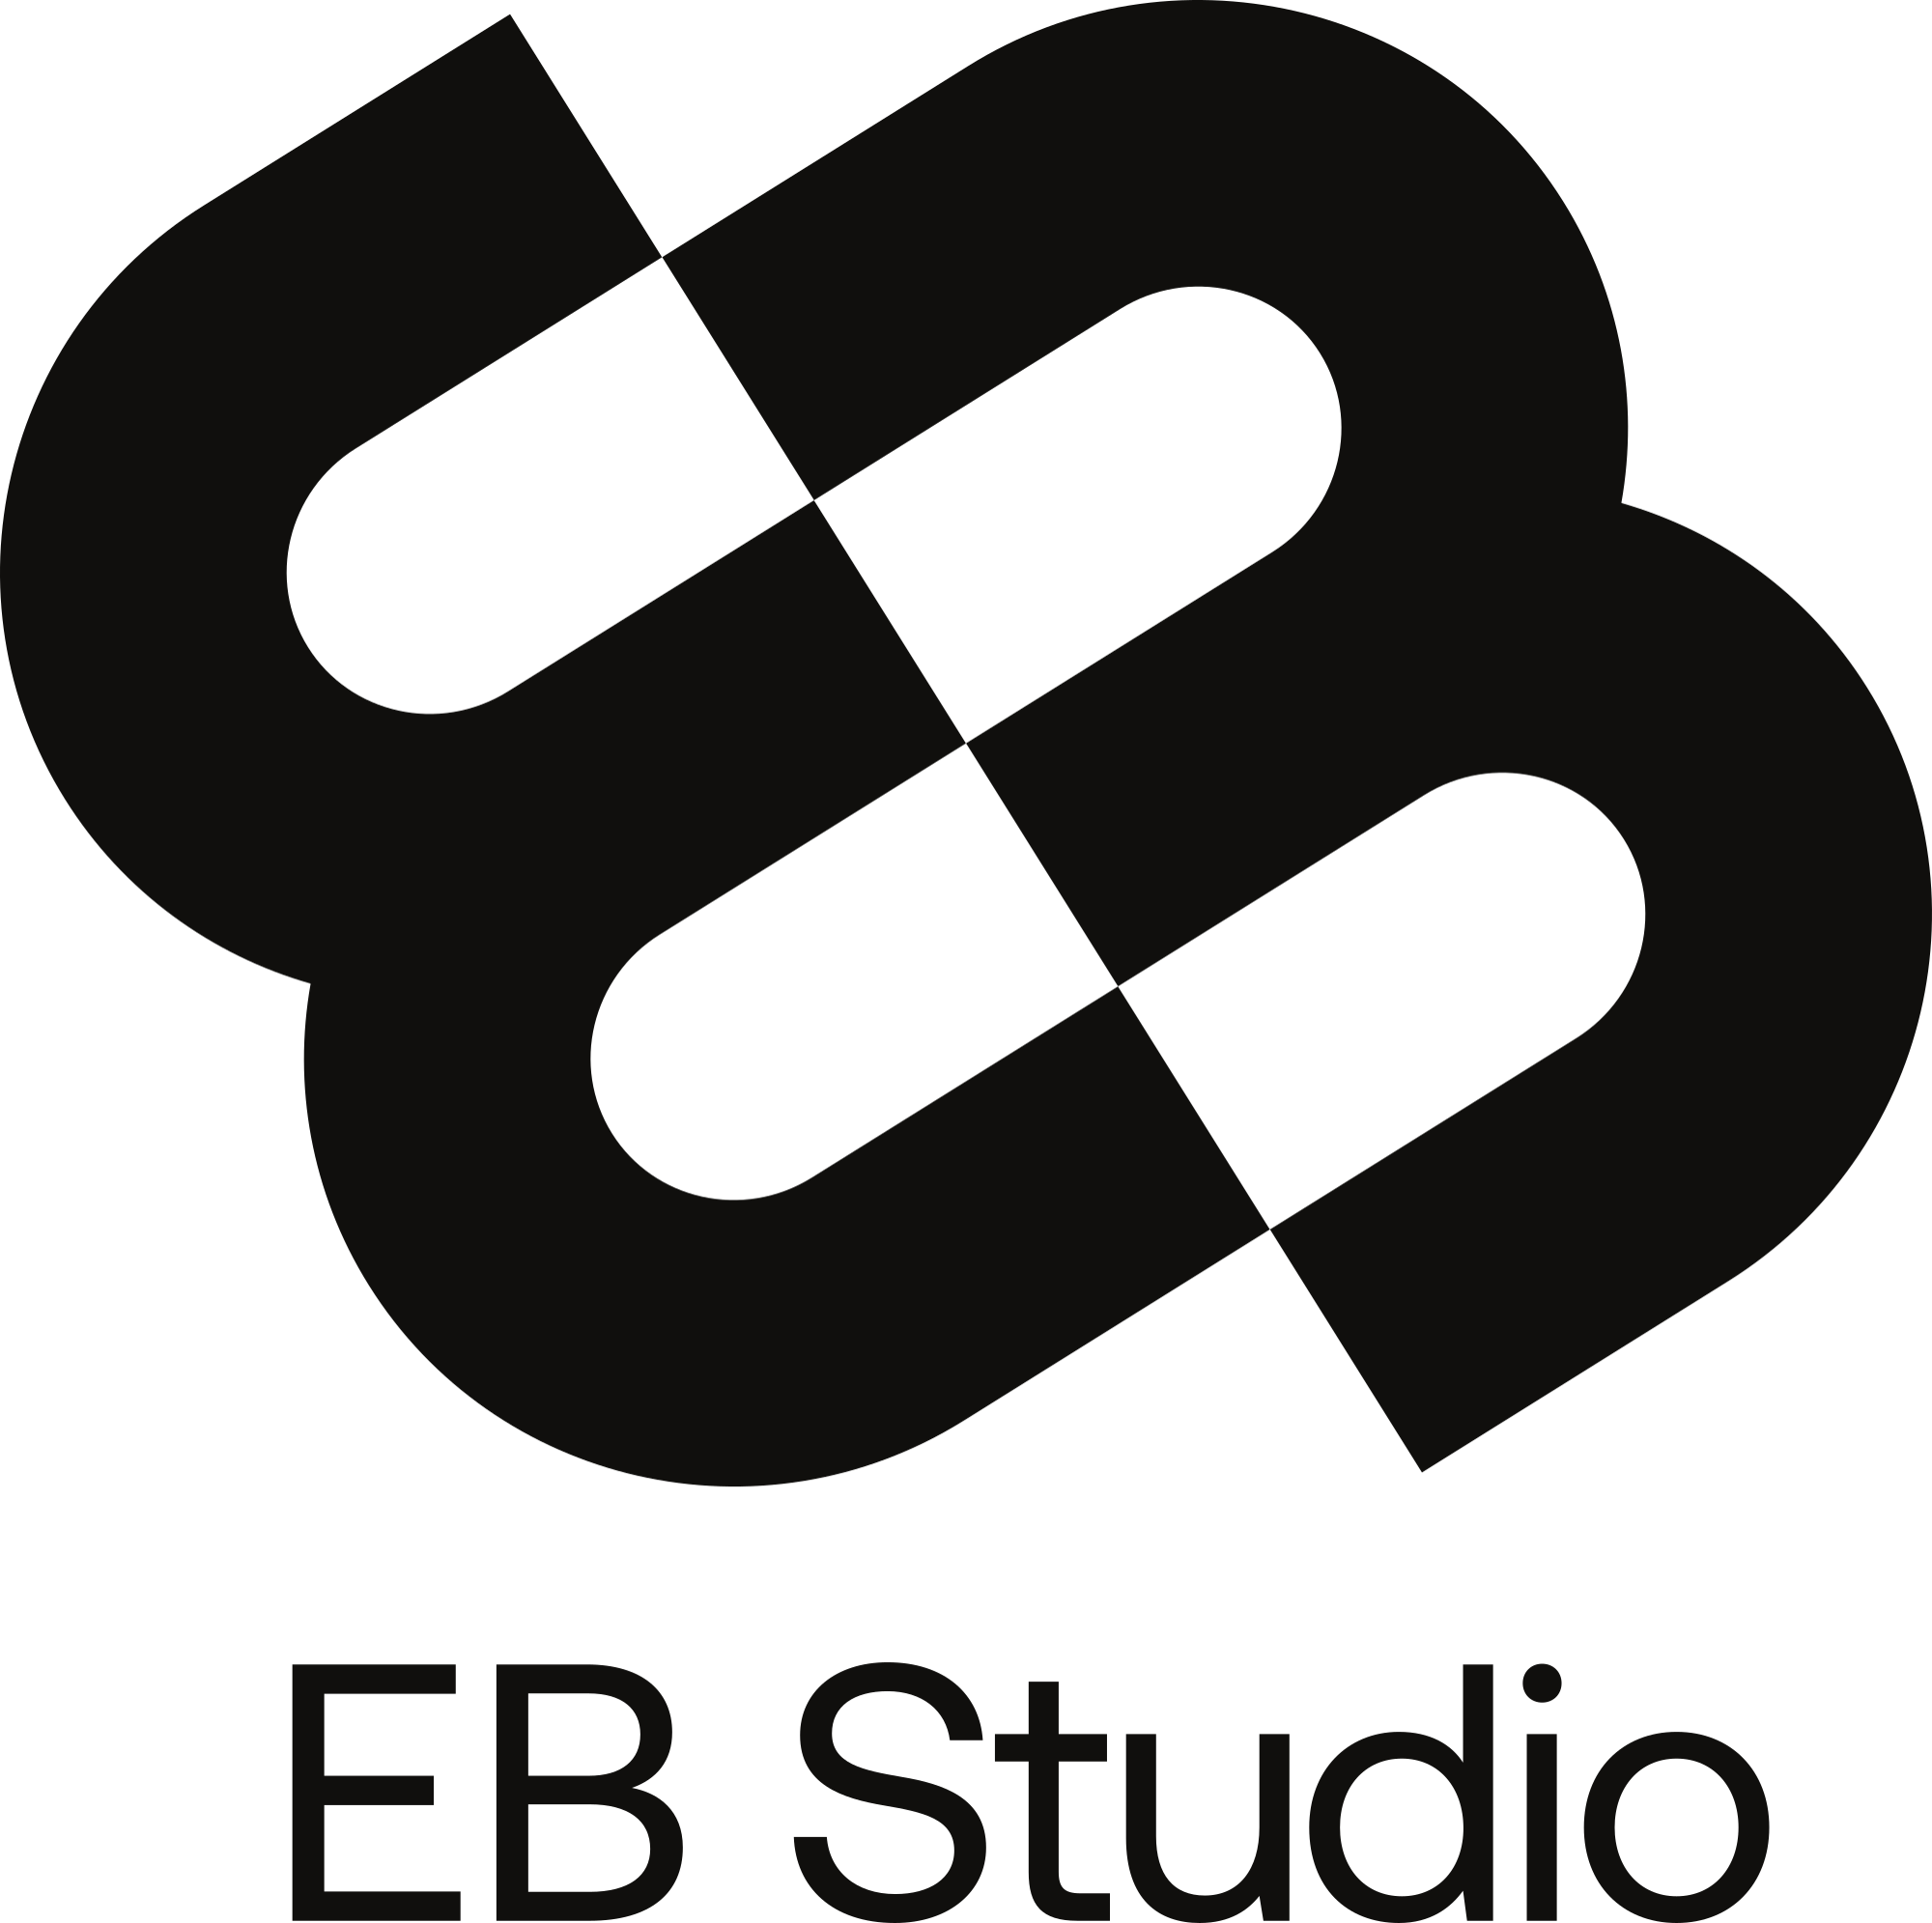 Ernst & Borg Studio